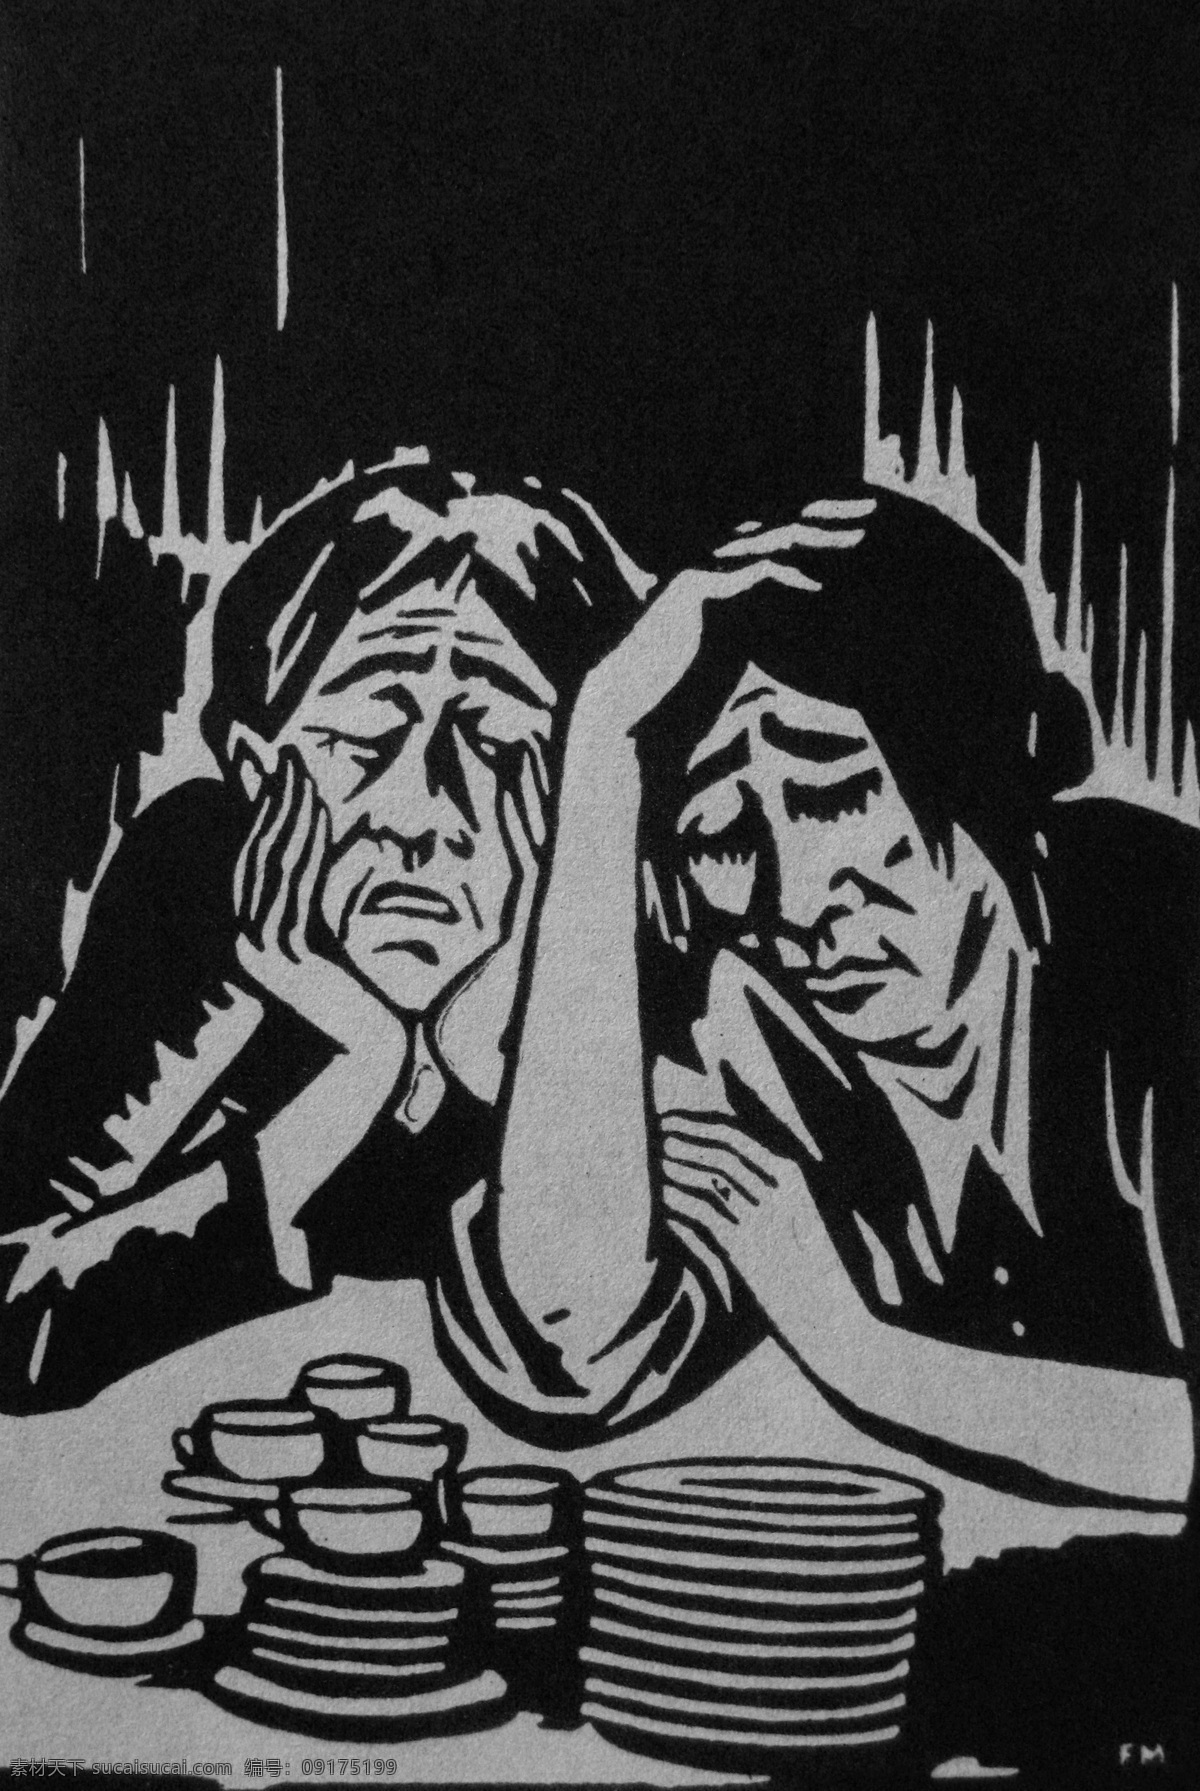 脸 面具 组画 二 木刻版画 法朗 士 麦绥莱勒 1926年 愁容满面 碟子 盘子 小杯子 茶盅 瓷器 老妇人 妇女 趴在桌上 艺术 绘画 雕版 印刷 木刻 版画 作品 绘画书法 文化艺术